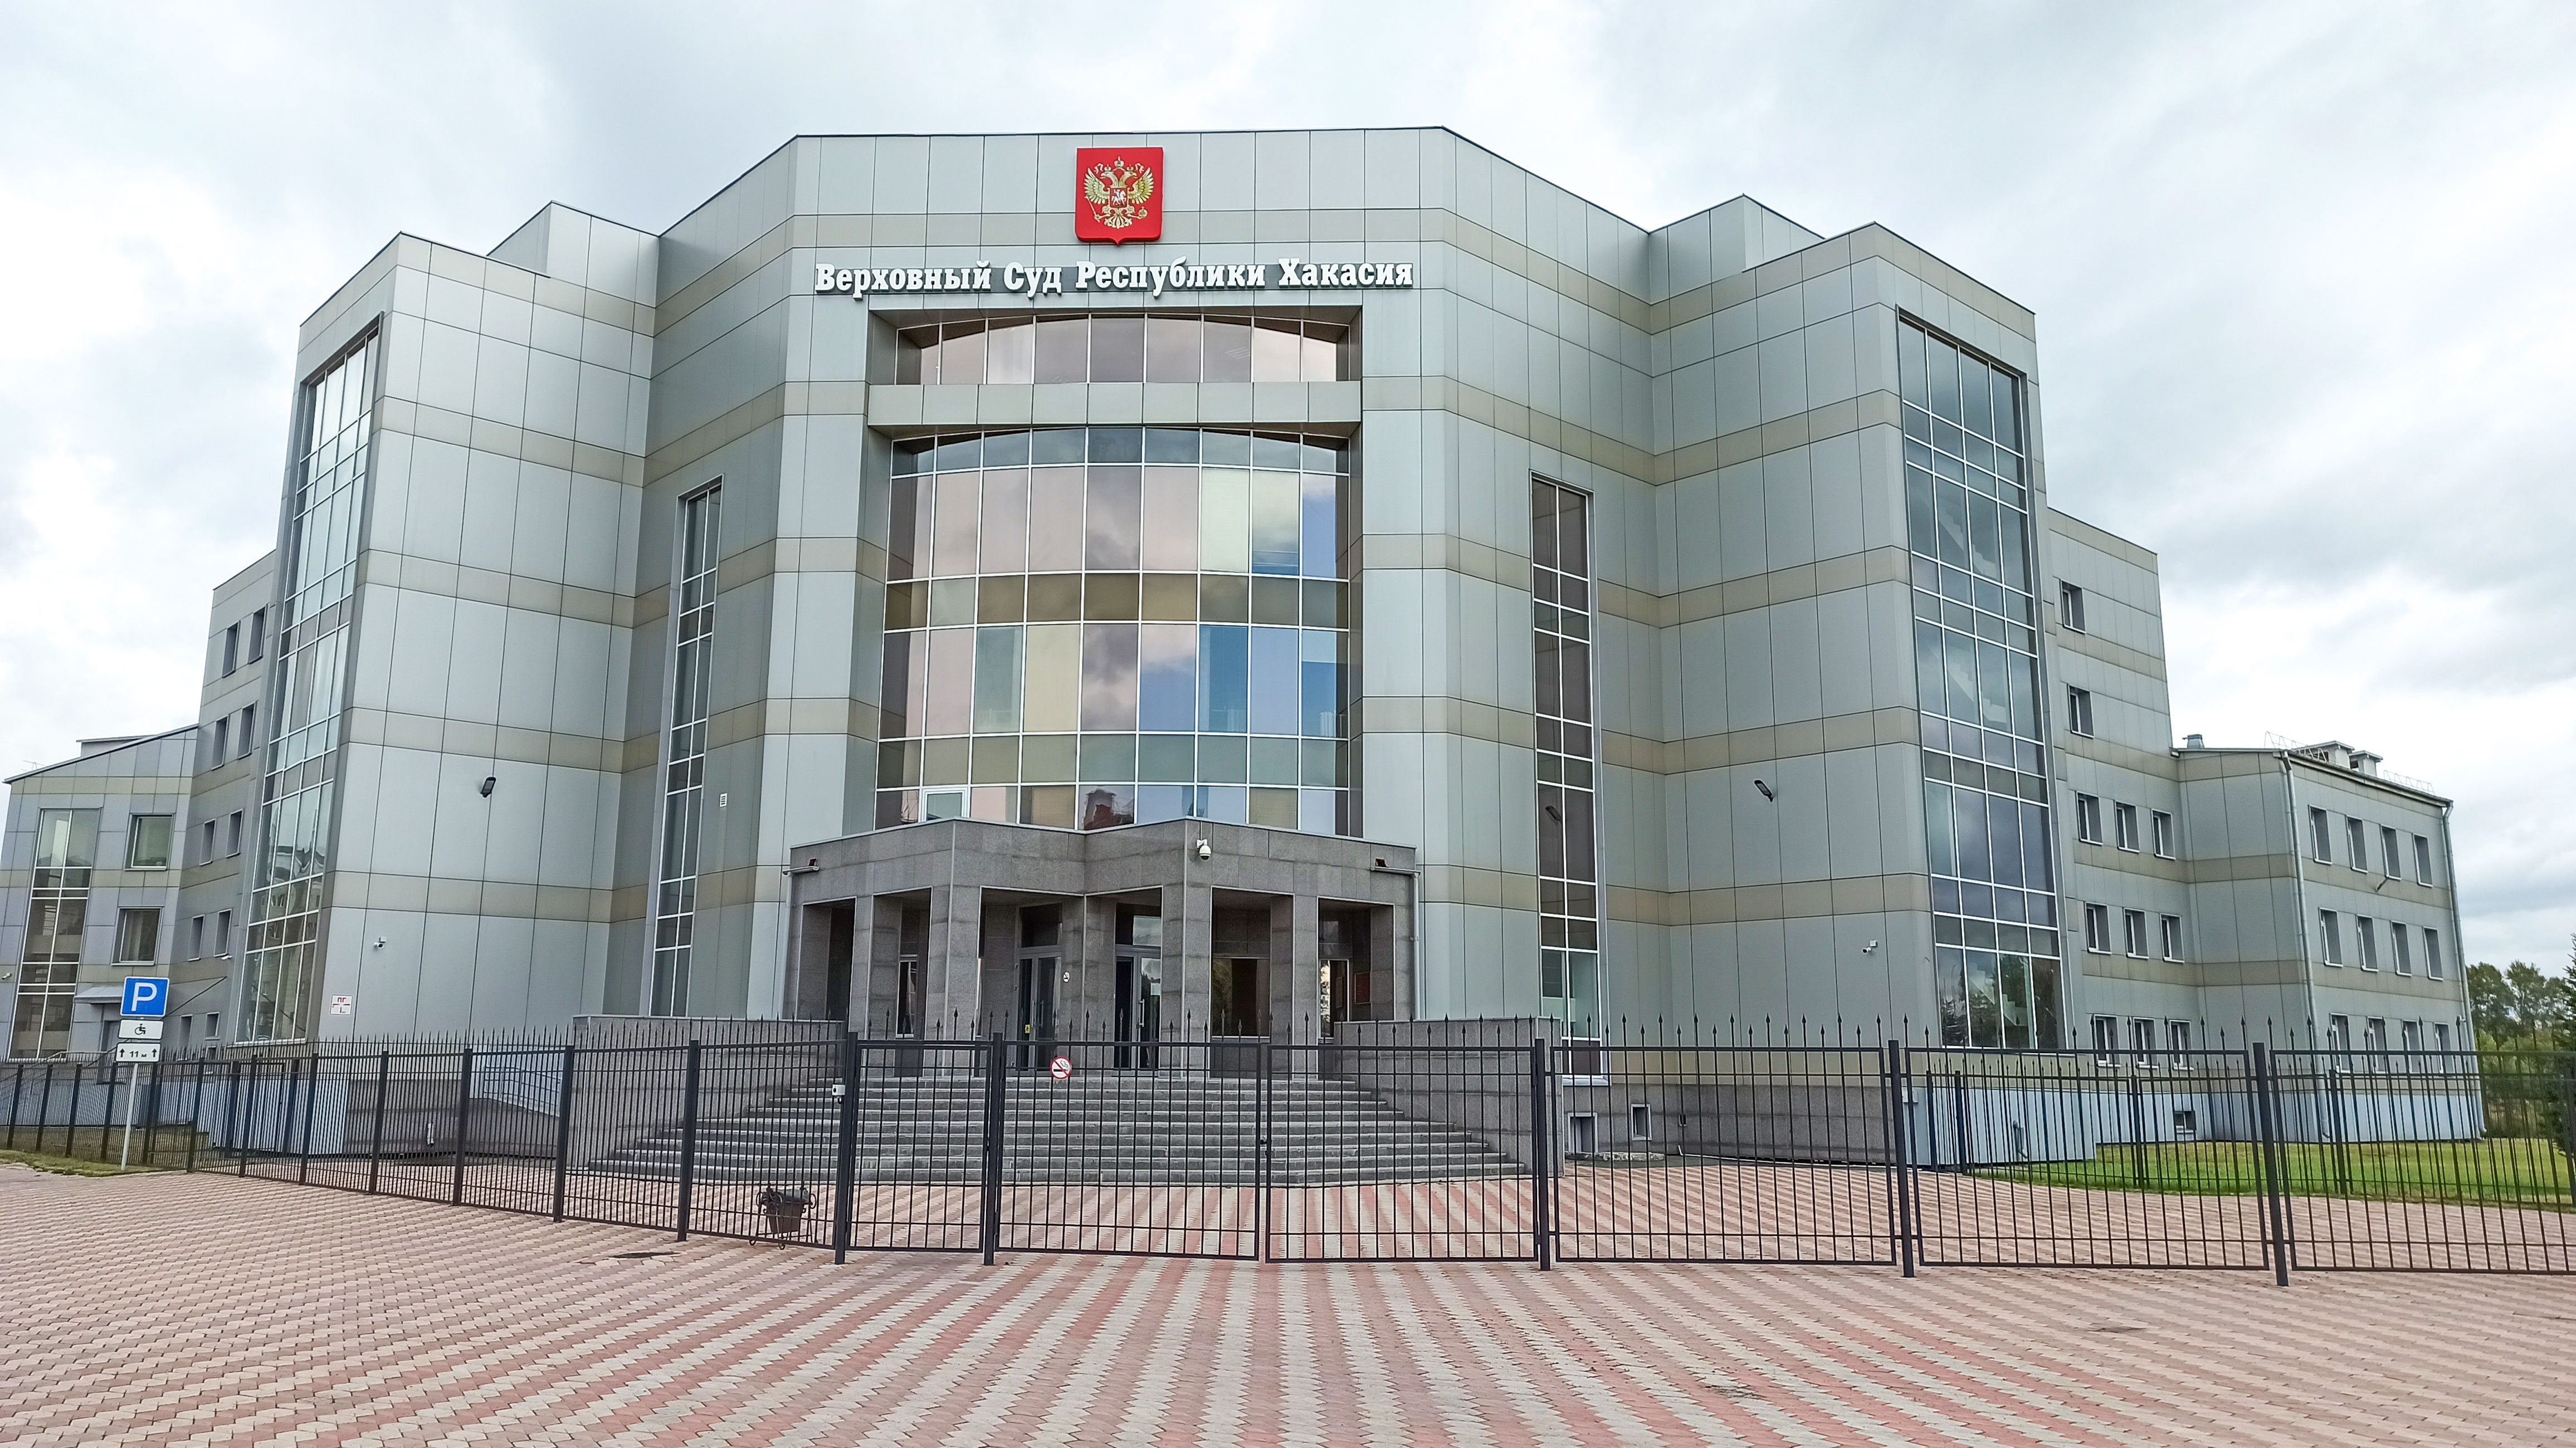 Верховный суд Республики Хакасия, фасад здания.